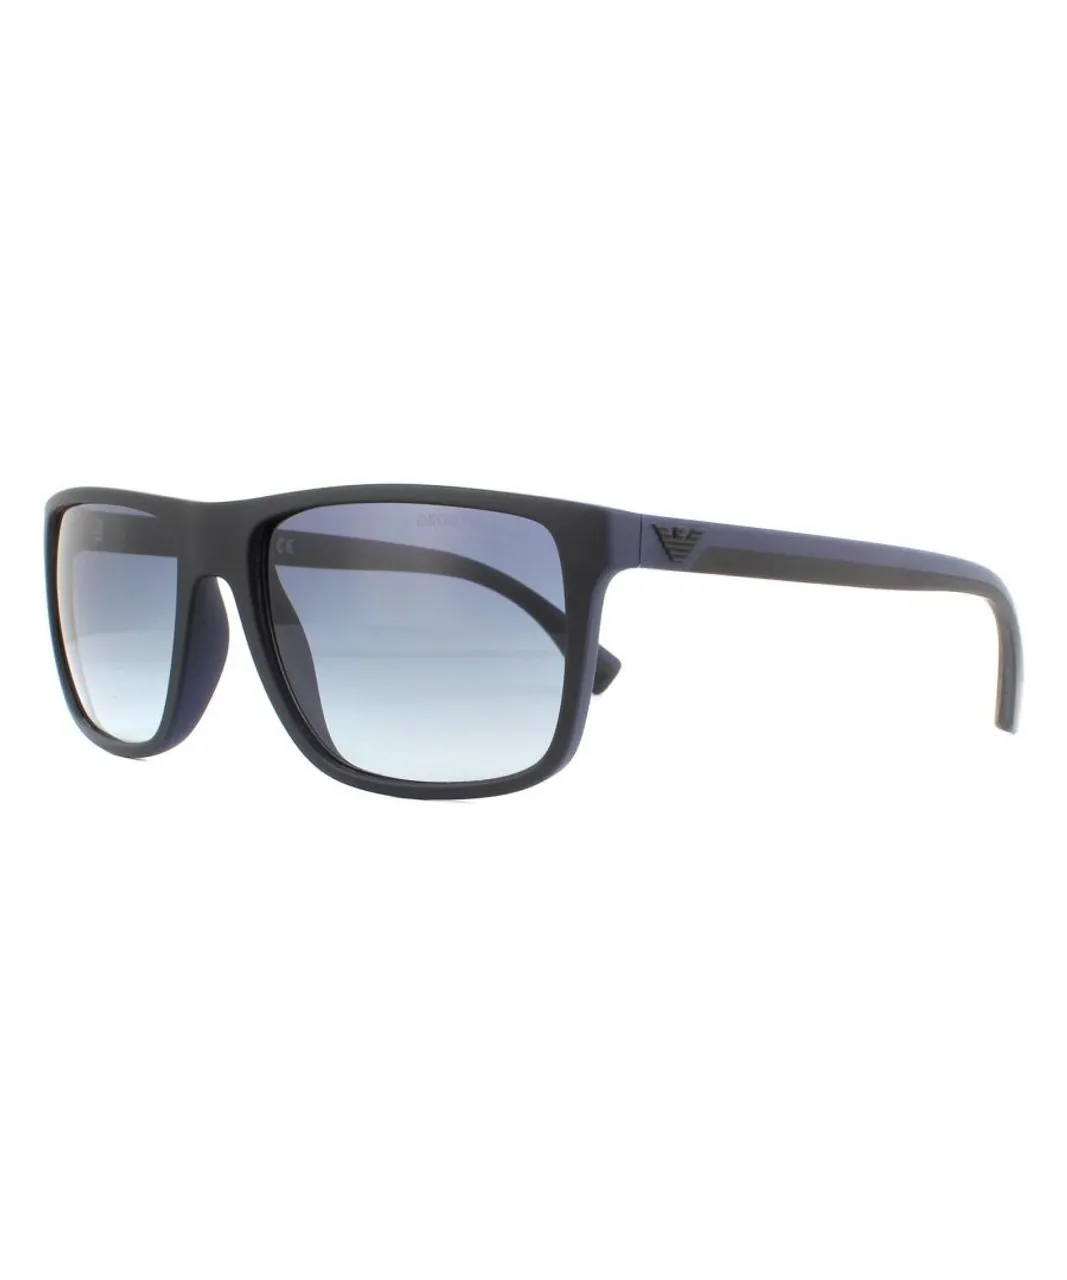 Emporio Armani Mens Sunglasses EA4033 58644L Black and Rubber Blue Gradient - One